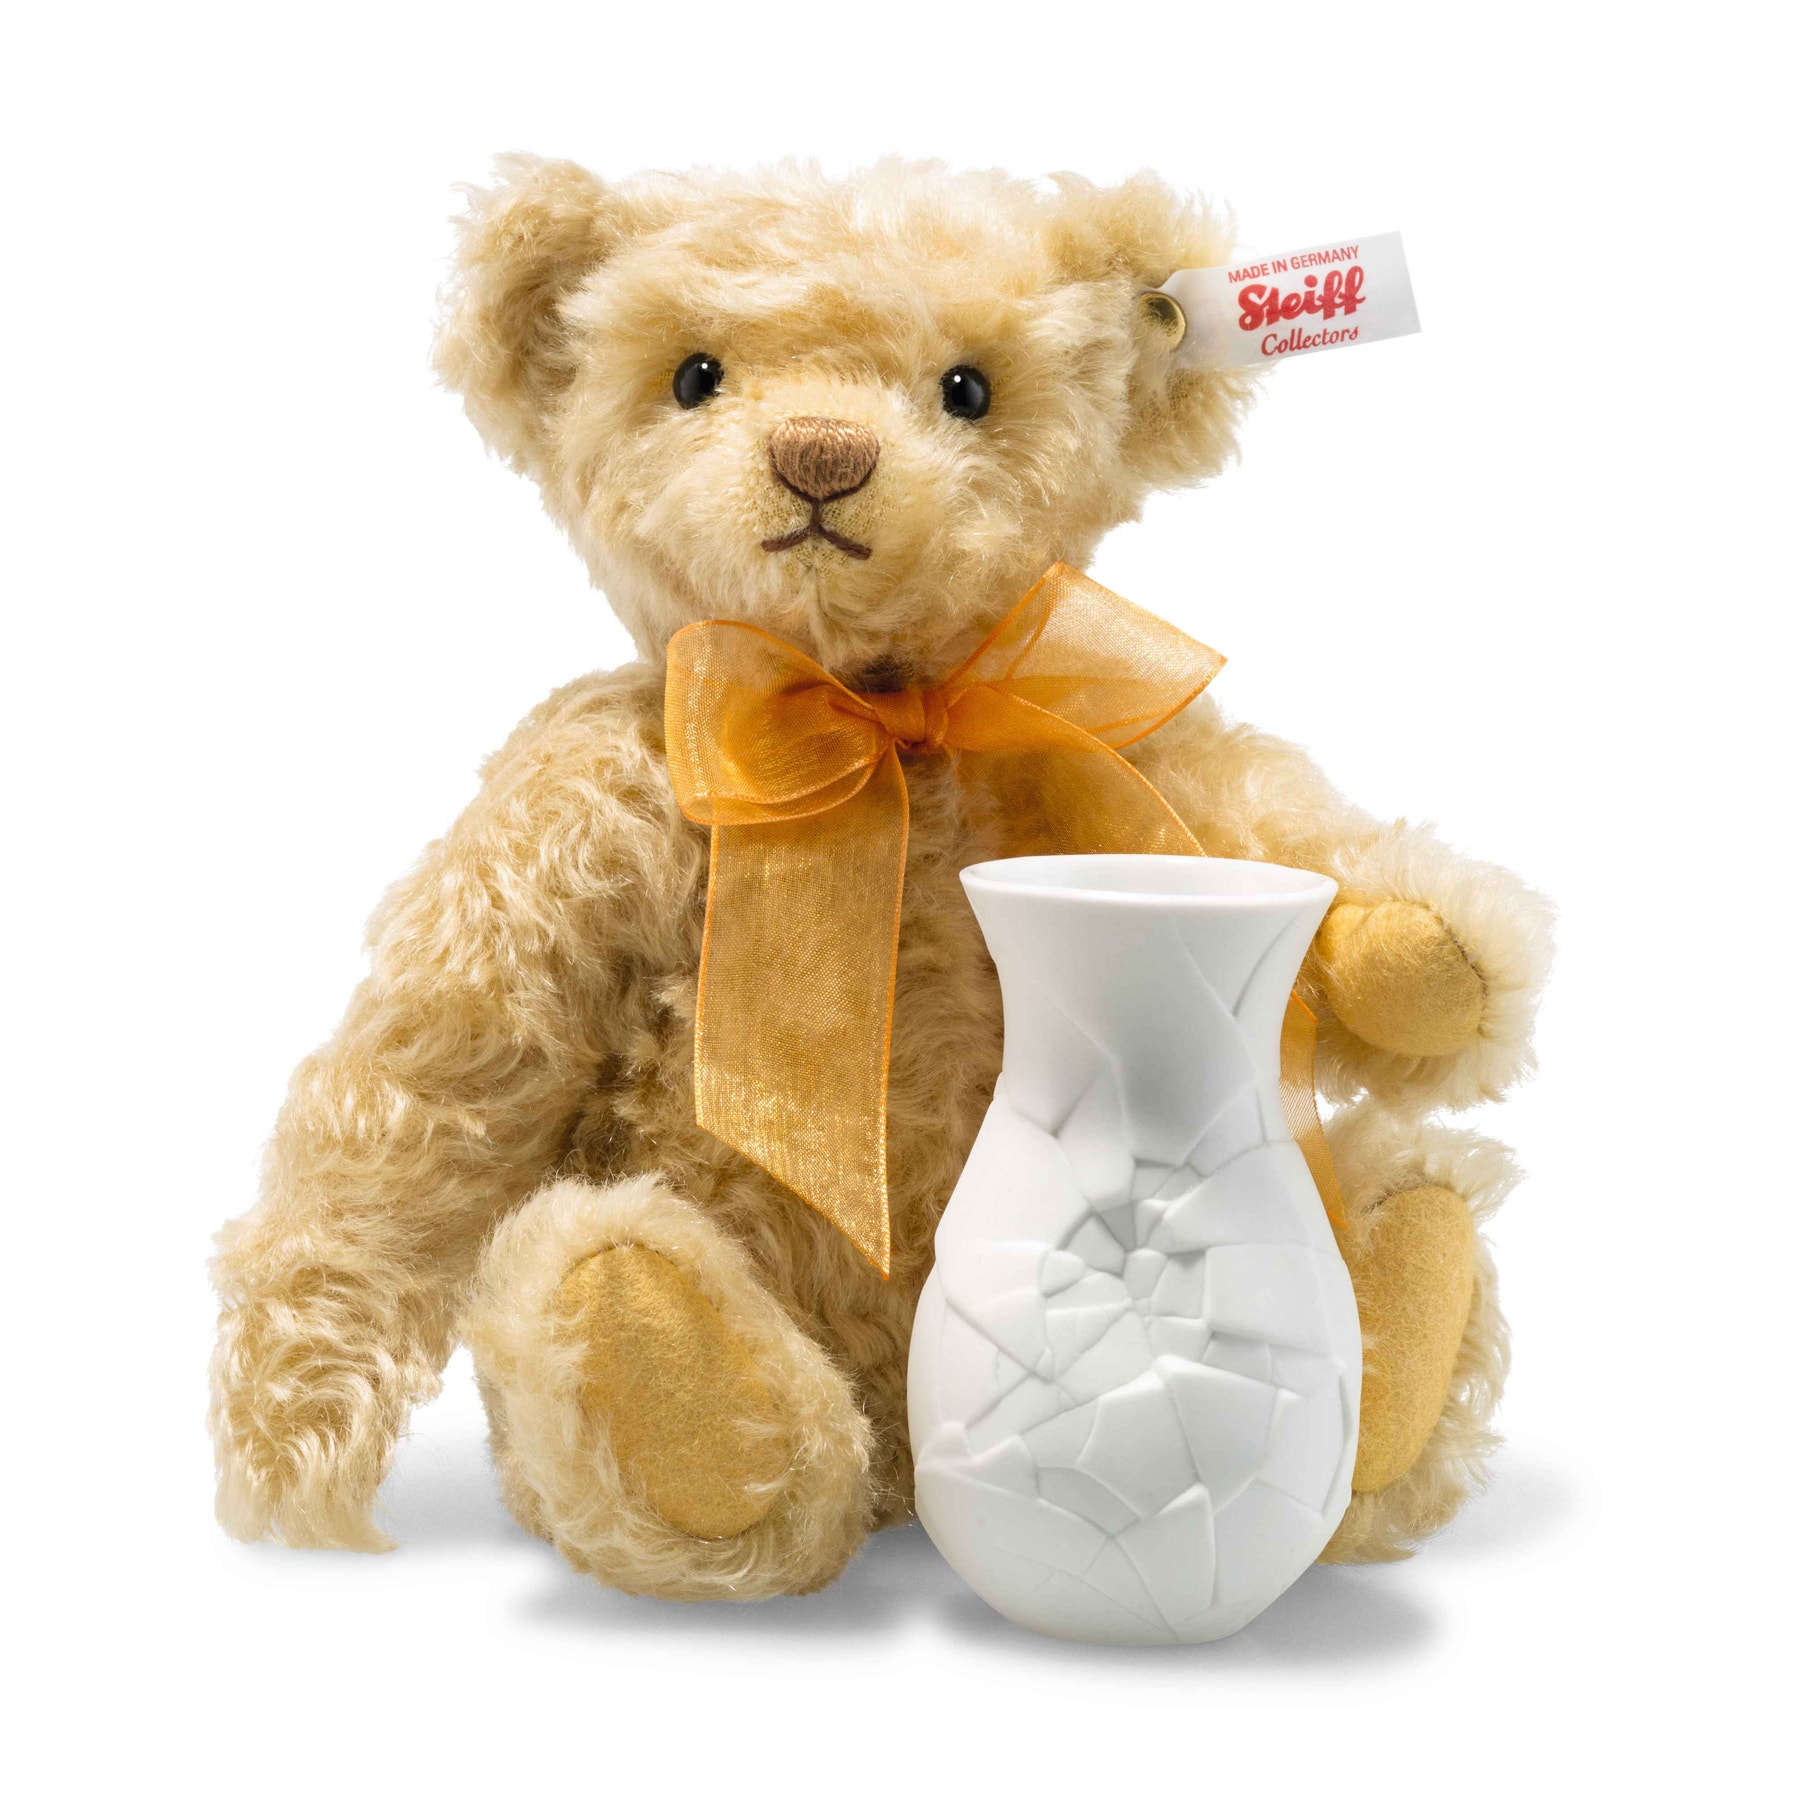 Sunflower Teddy bear with vase